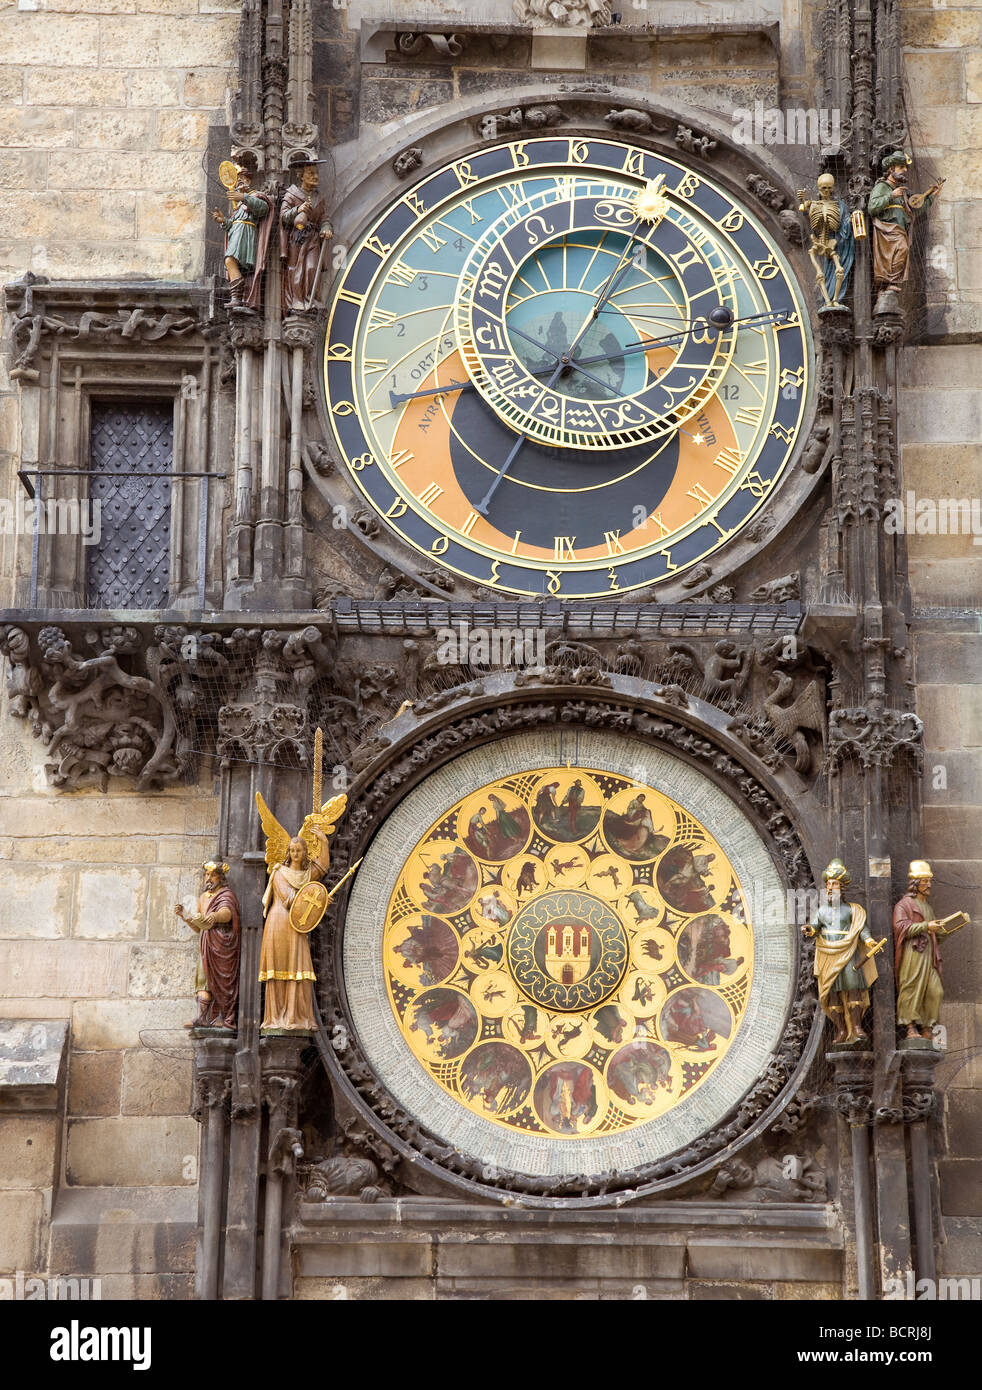 Der Prager Orloj oder Prager Orloj ist eine mittelalterliche astronomische Uhr befindet sich in Prag, Tschechien. Stockfoto